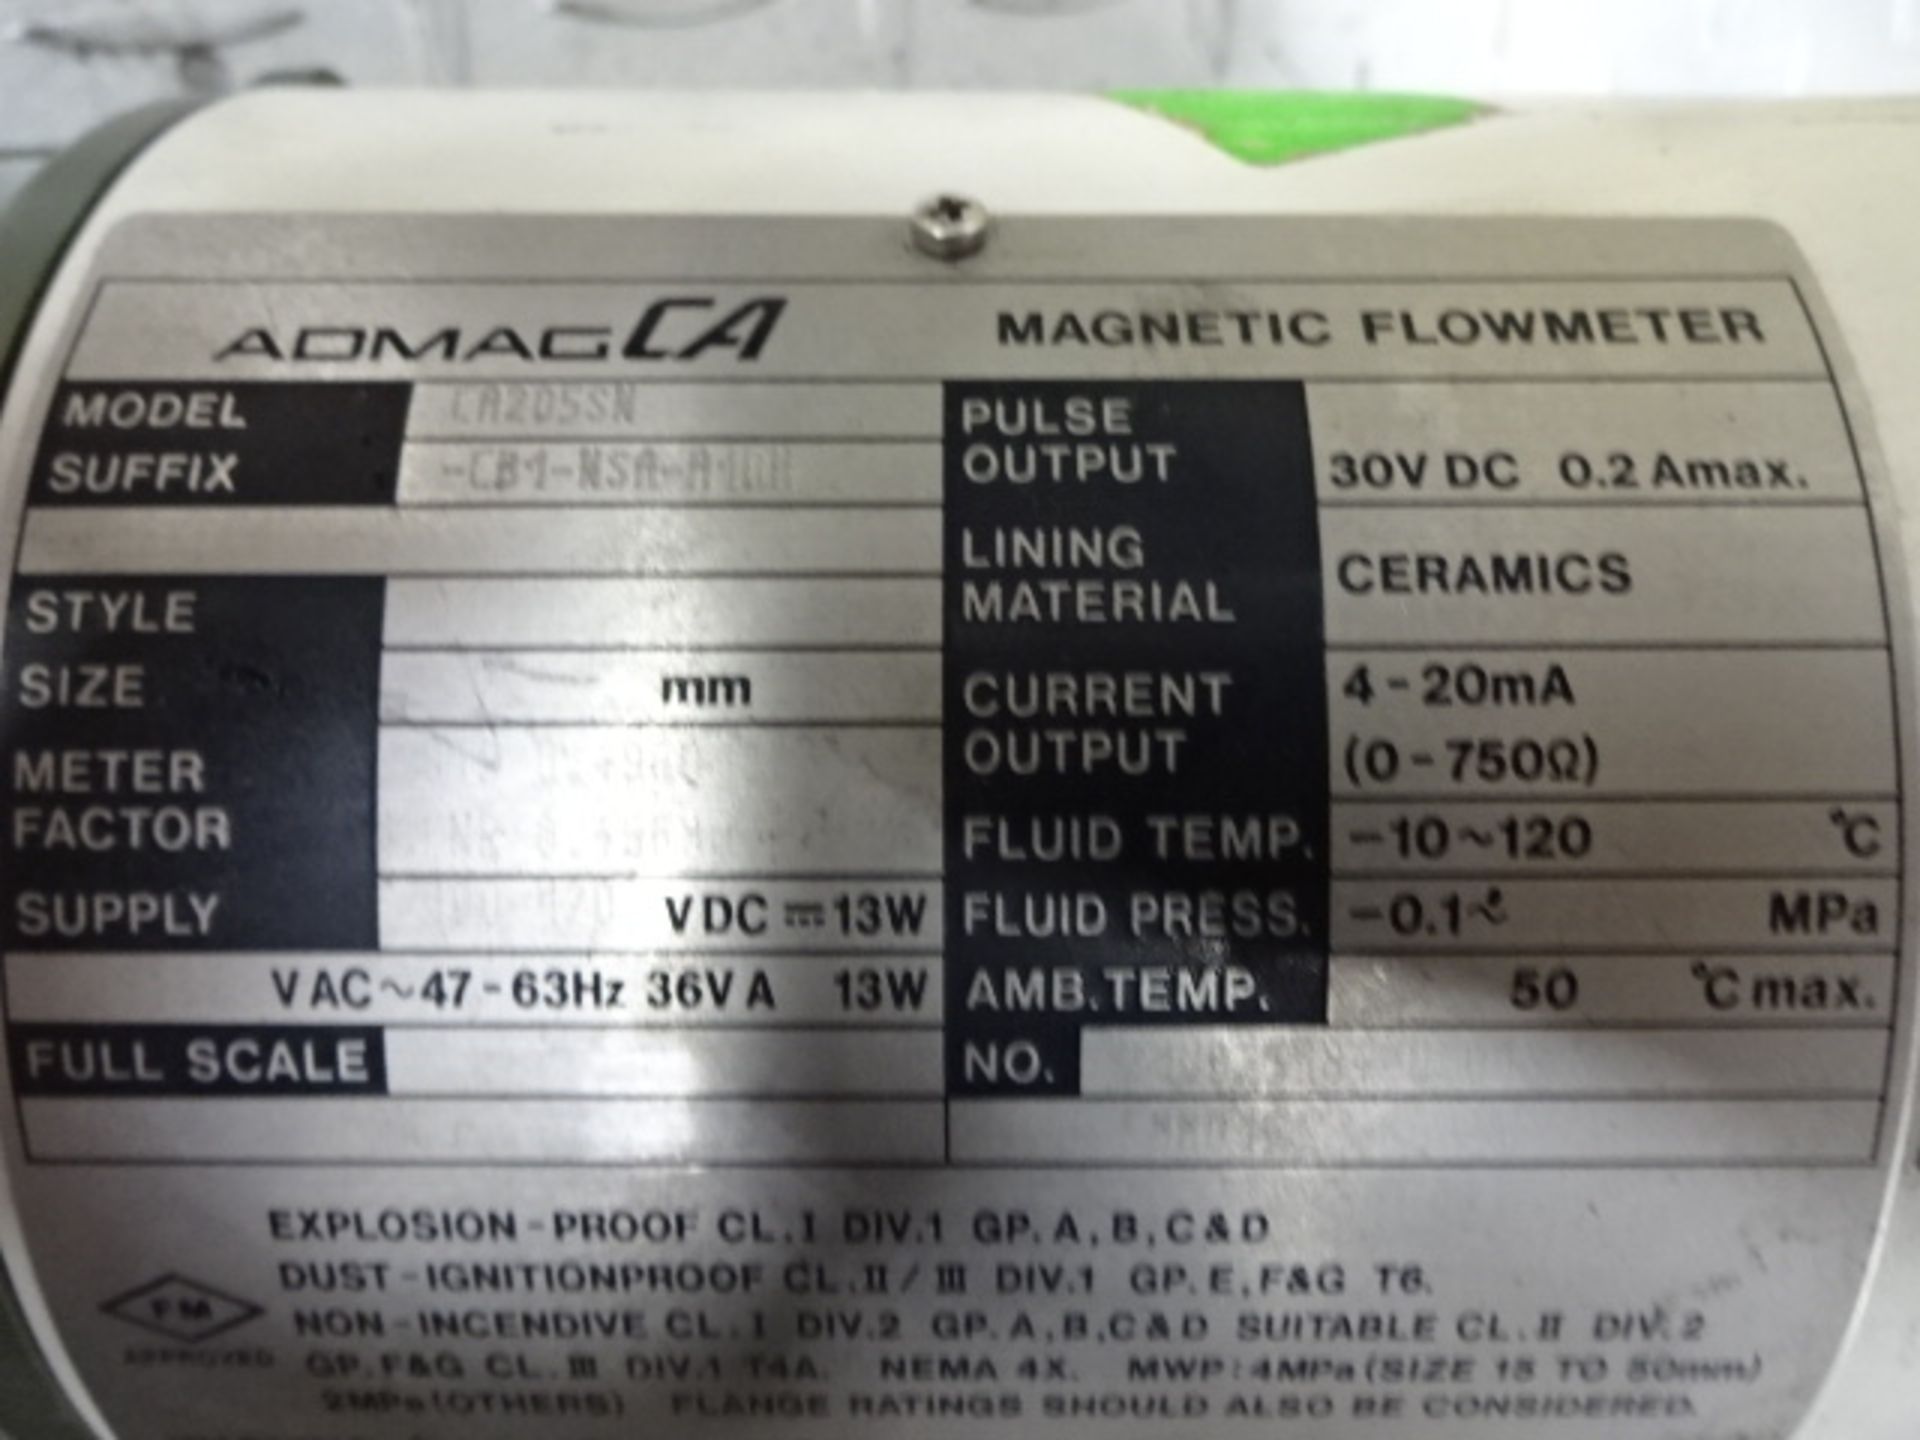 ADMAG CA magnetic flowmeter - Image 6 of 7